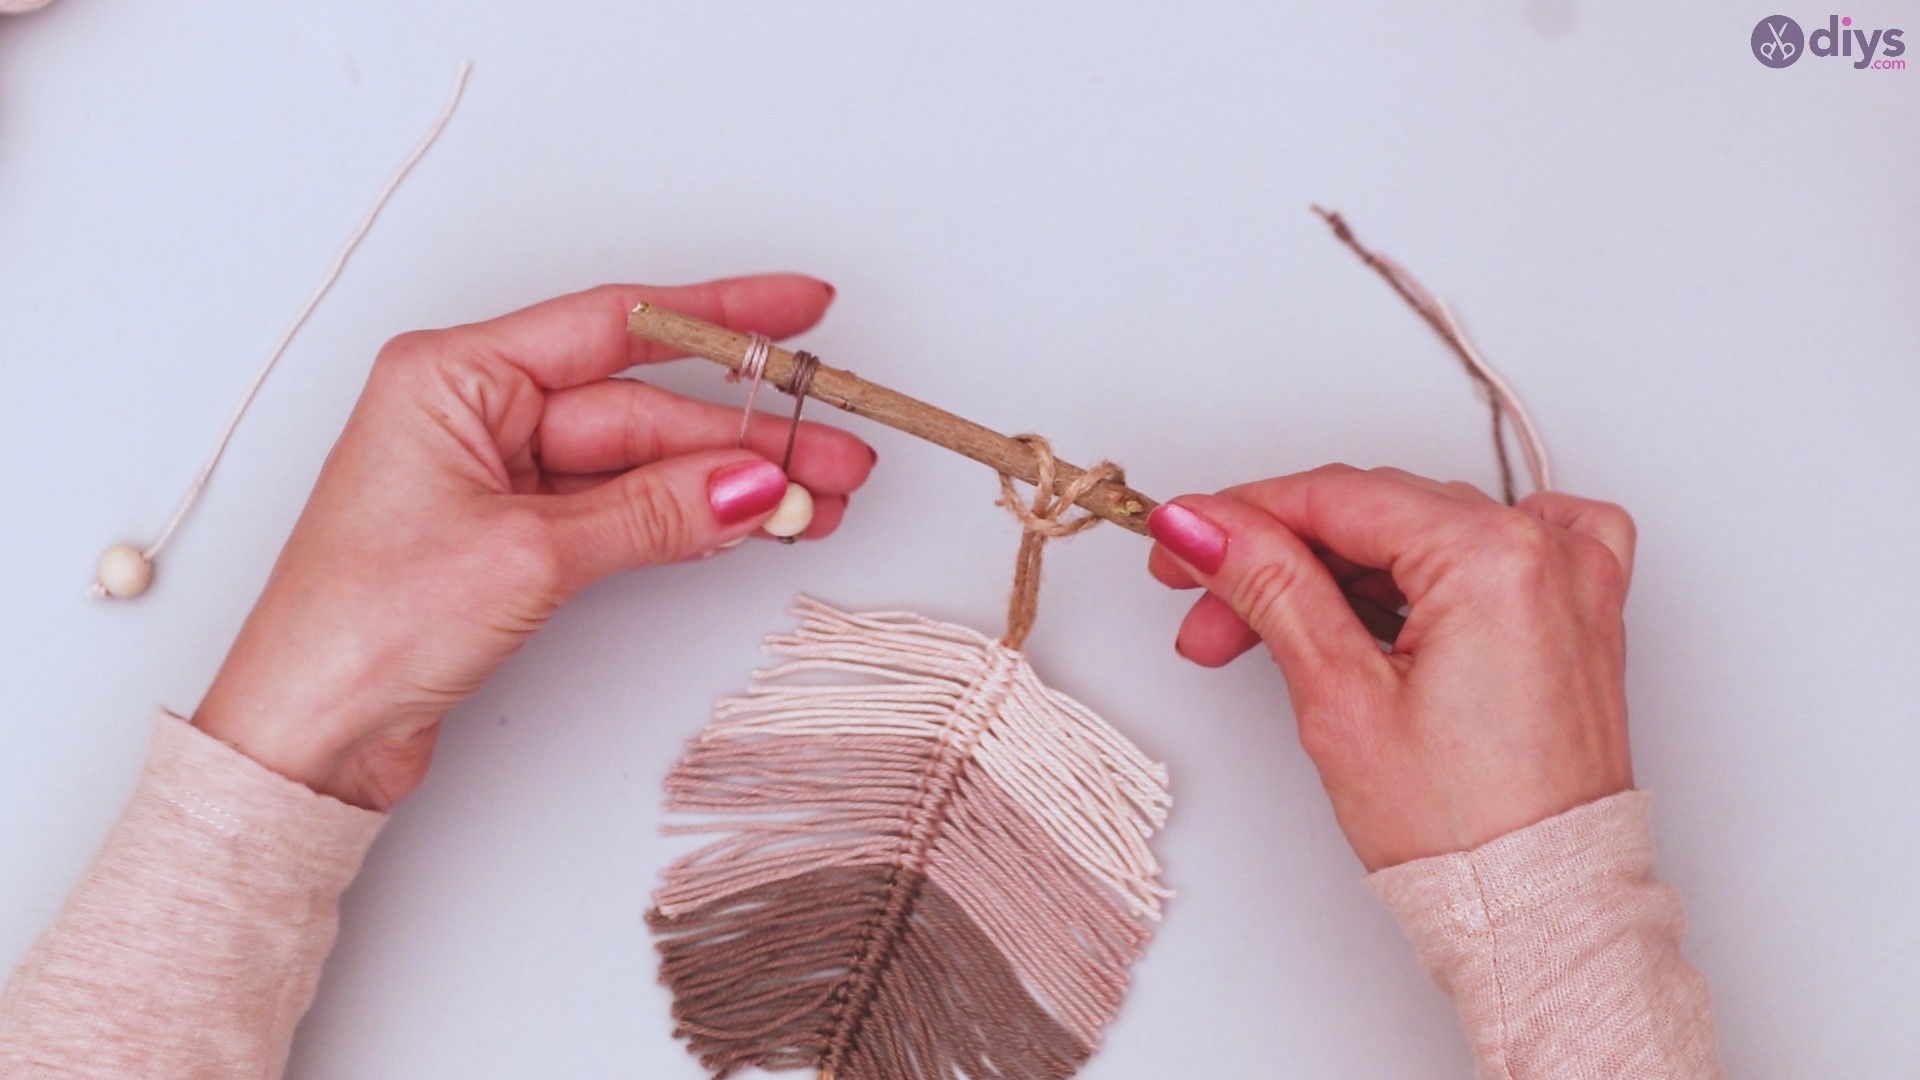 Diy yarn leaf wall decor tutorial (42)